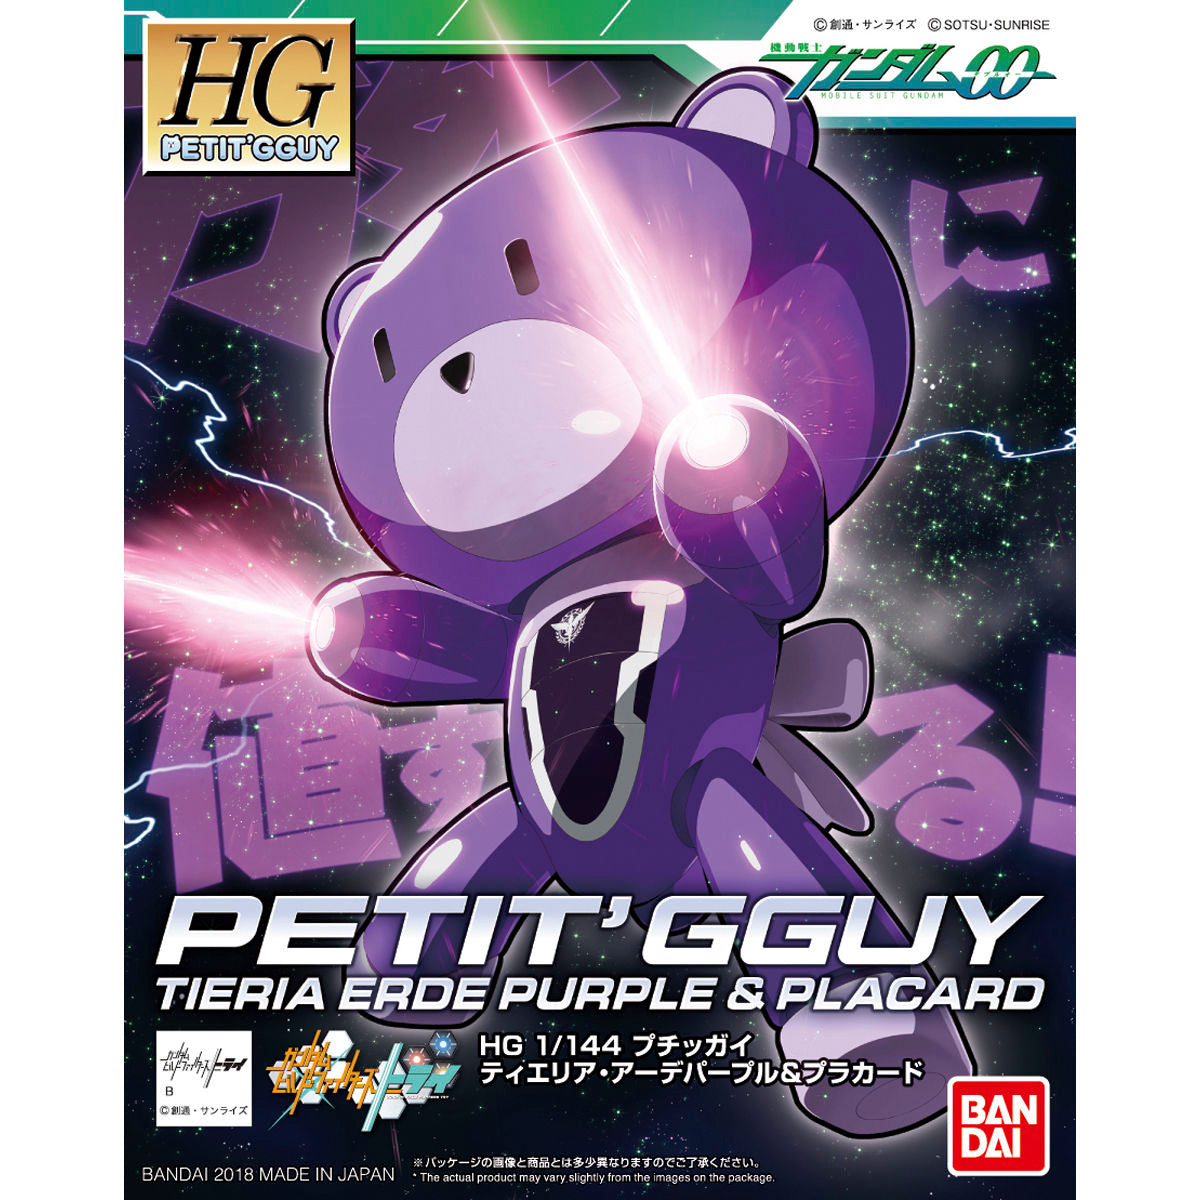 HGPG HG 1/144 Petit'gguy Tieria Erde Purple & Placard